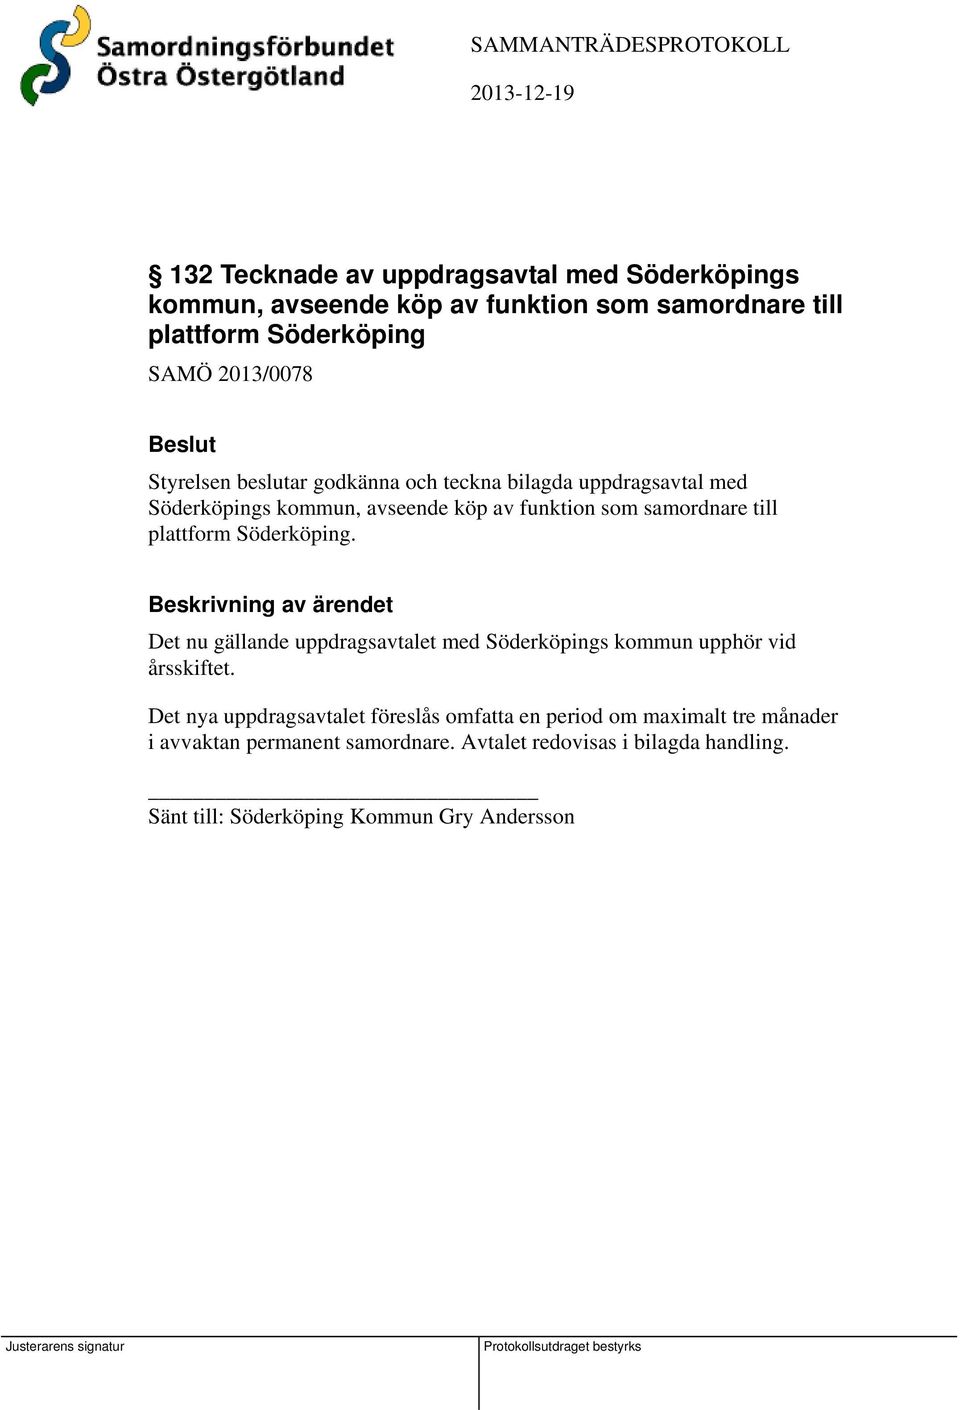 plattform Söderköping. Det nu gällande uppdragsavtalet med Söderköpings kommun upphör vid årsskiftet.